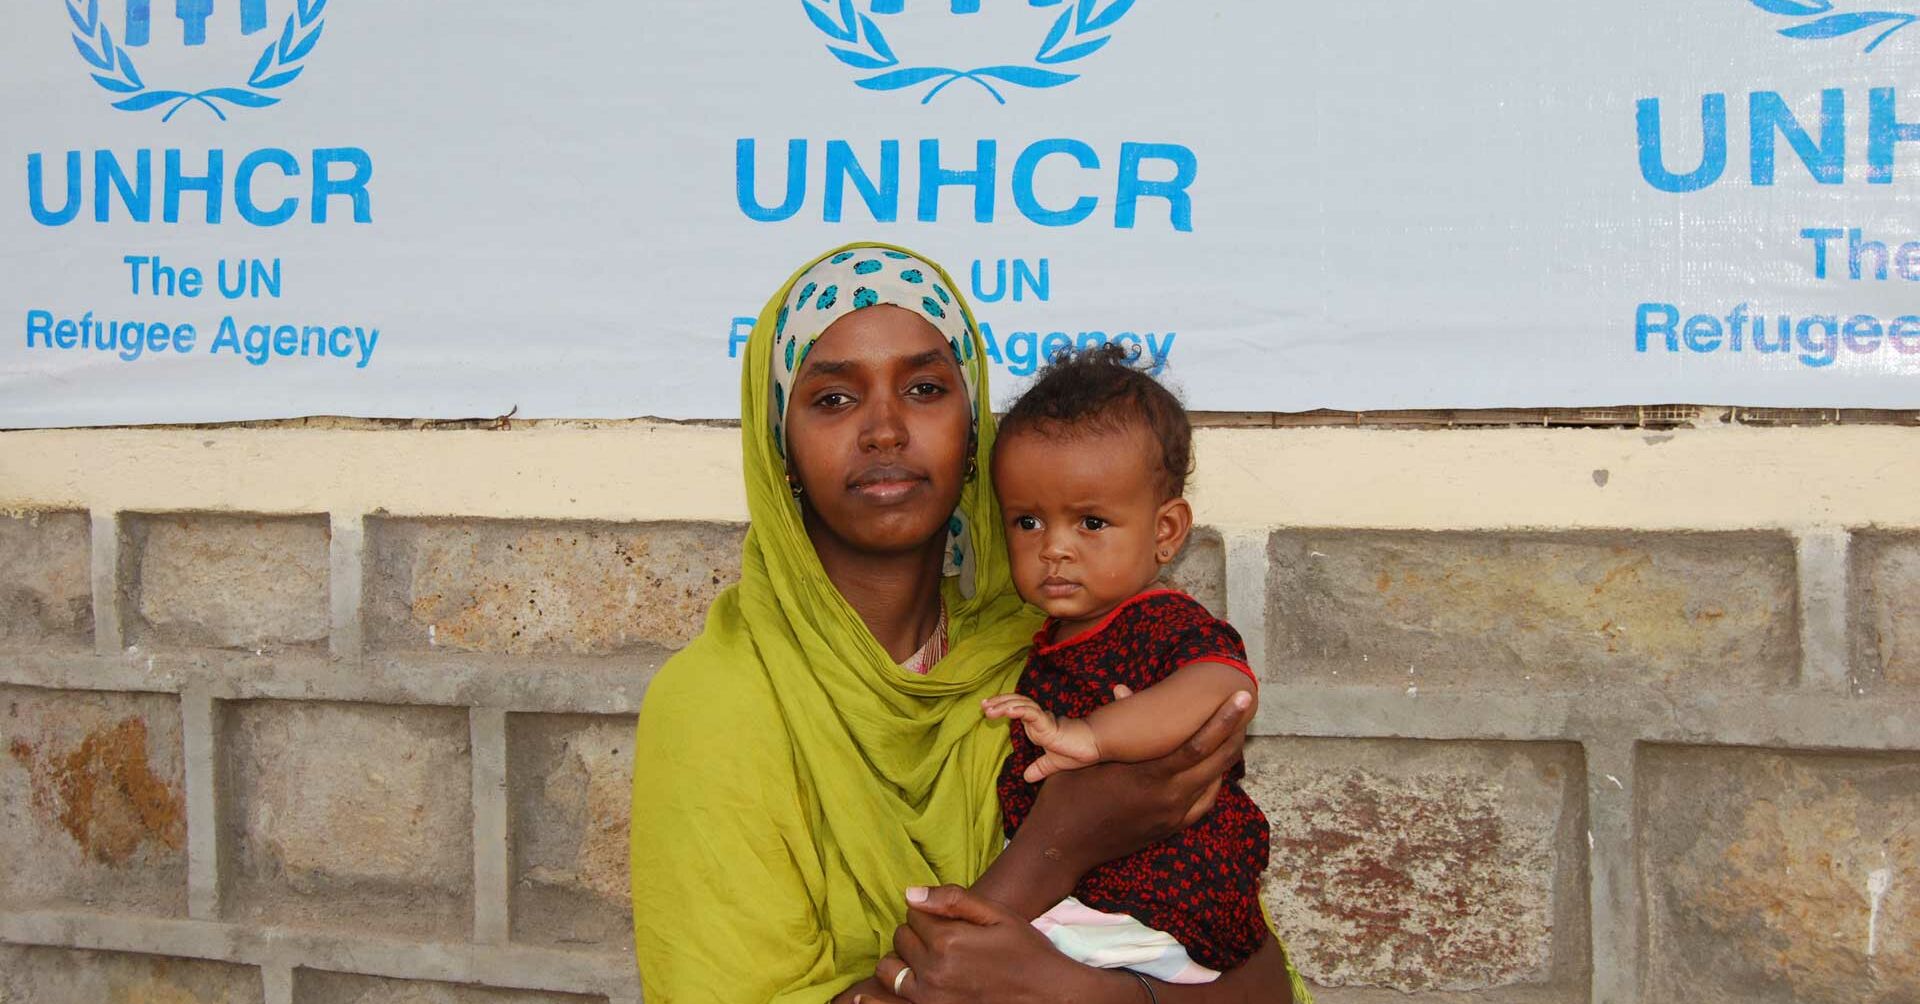 Frau mit Kind auf dem Arm, Hintergrund Plane mit UNHCR Logo Auslandshilfe.jpg